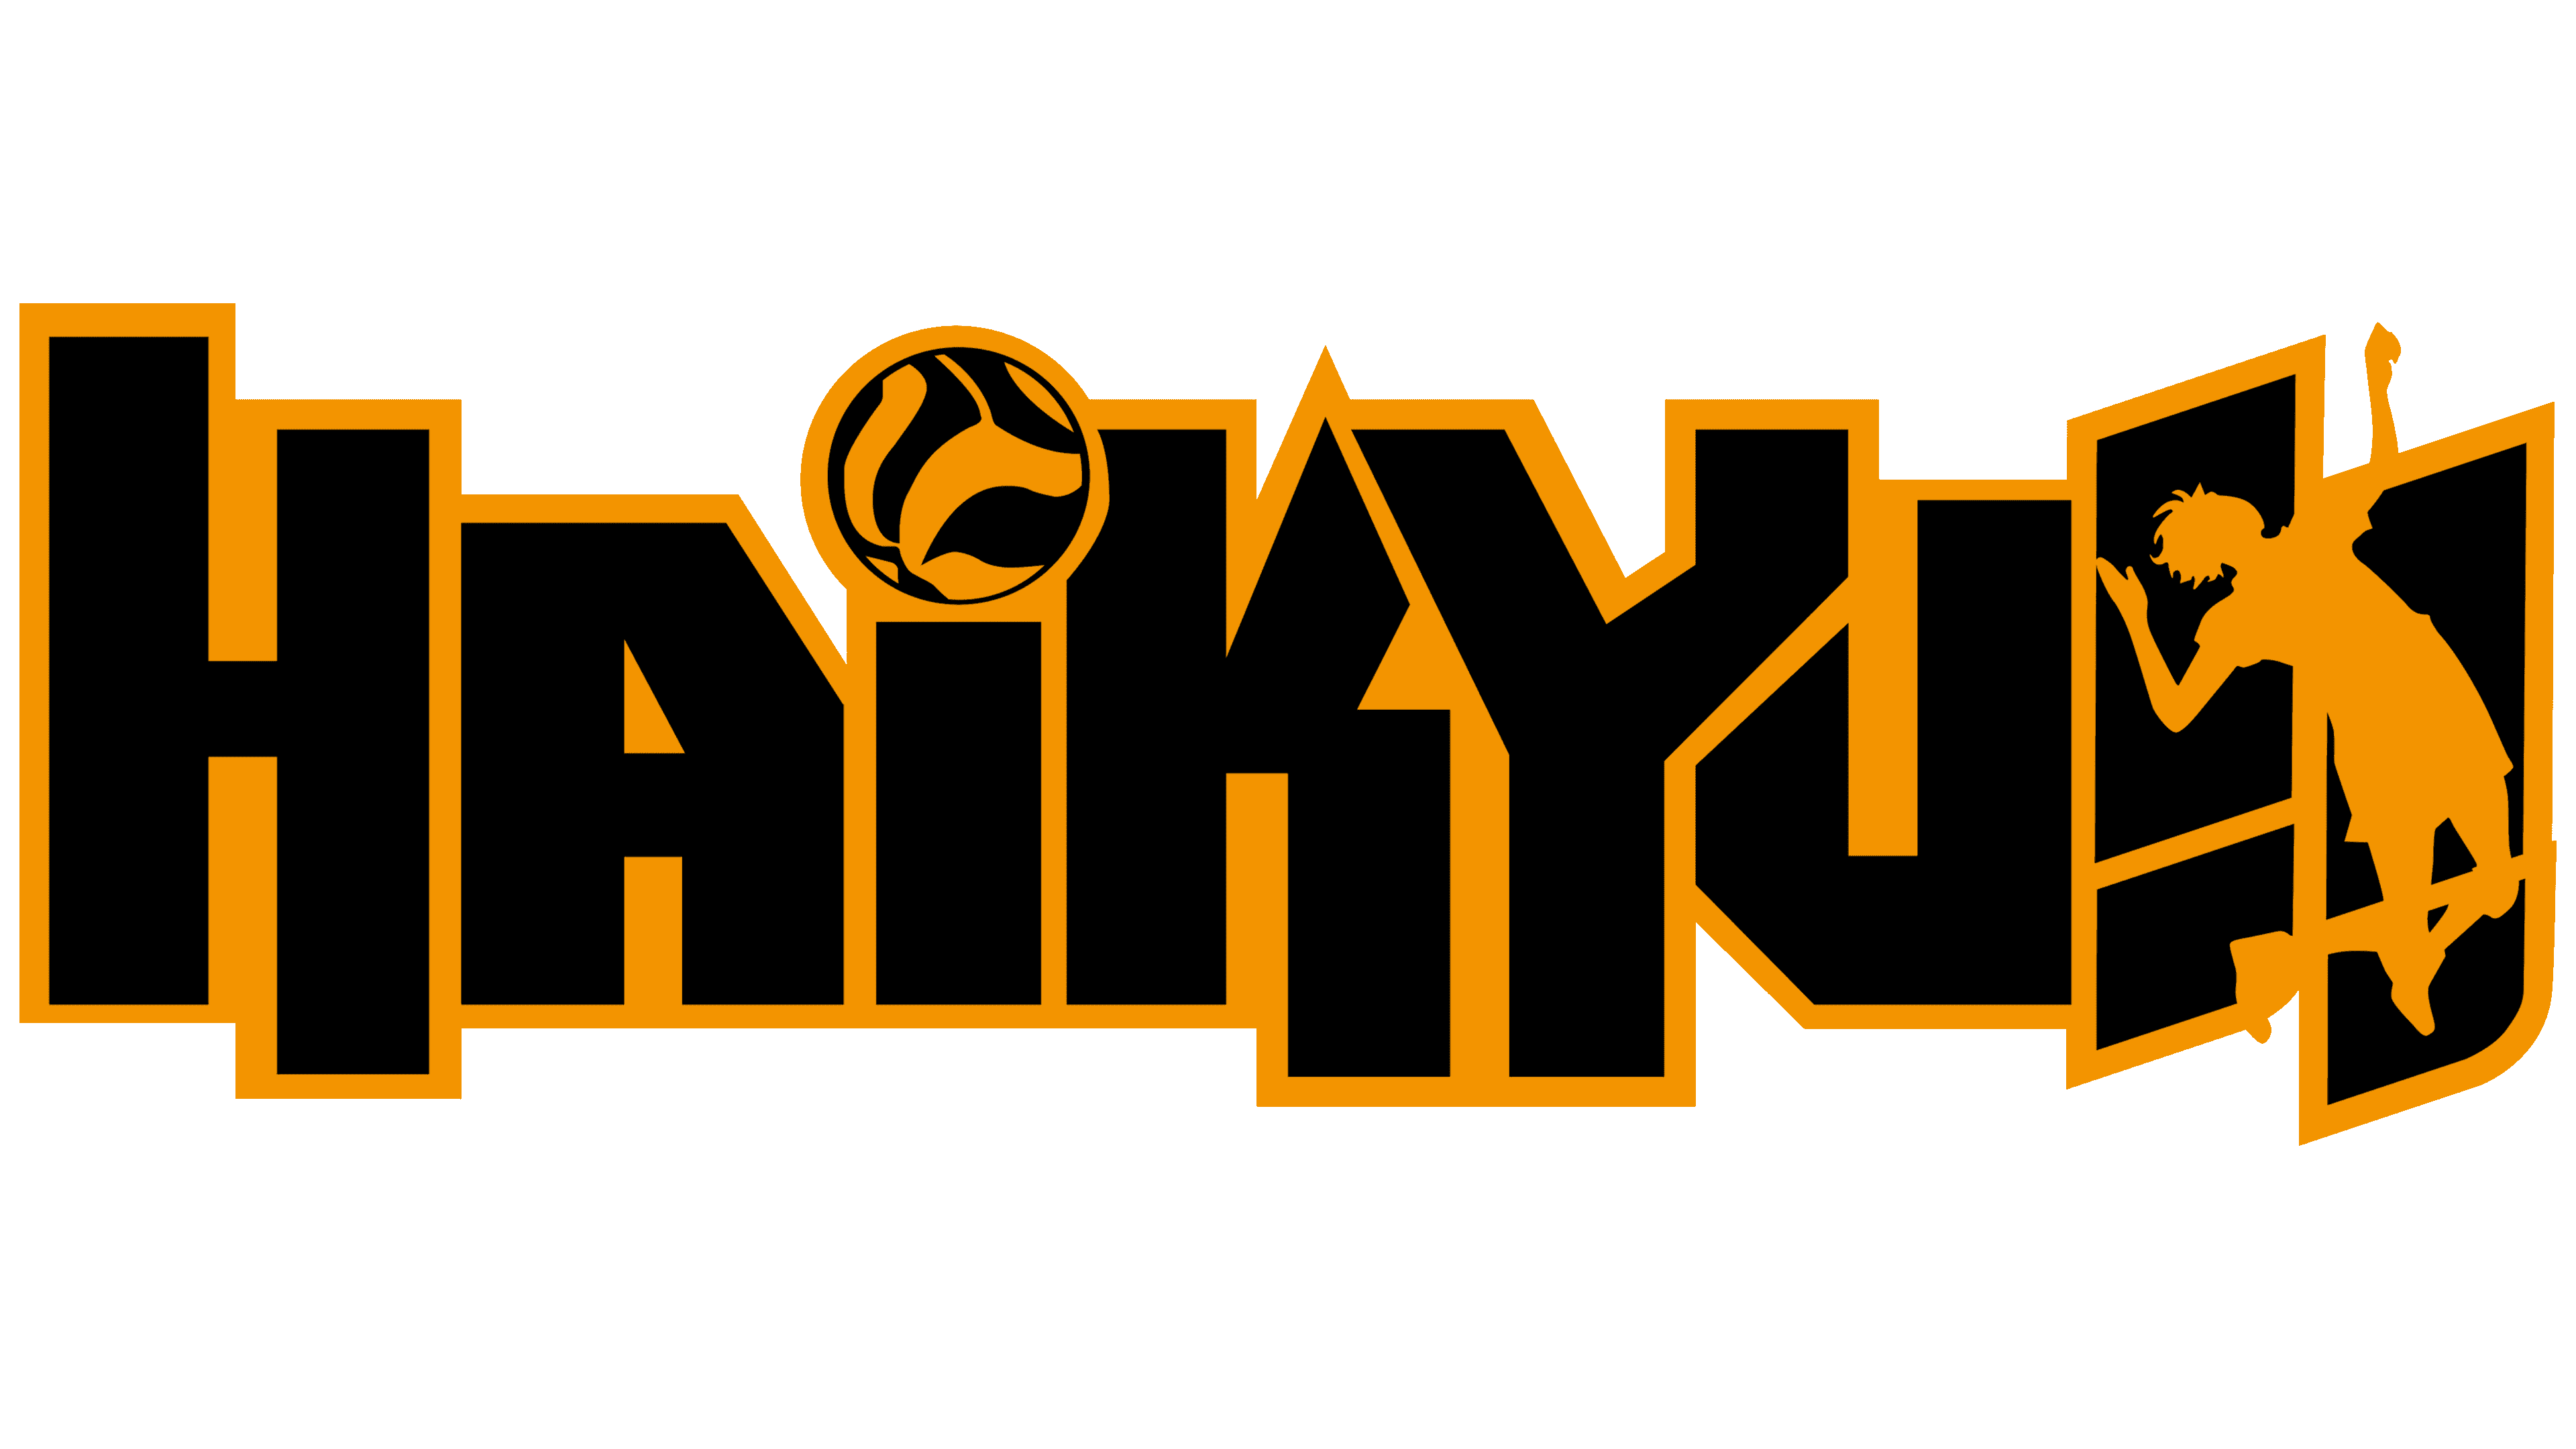 Logo del anime Haikyuu!! tiene la silueta del personaje principal en los signos de admiración 